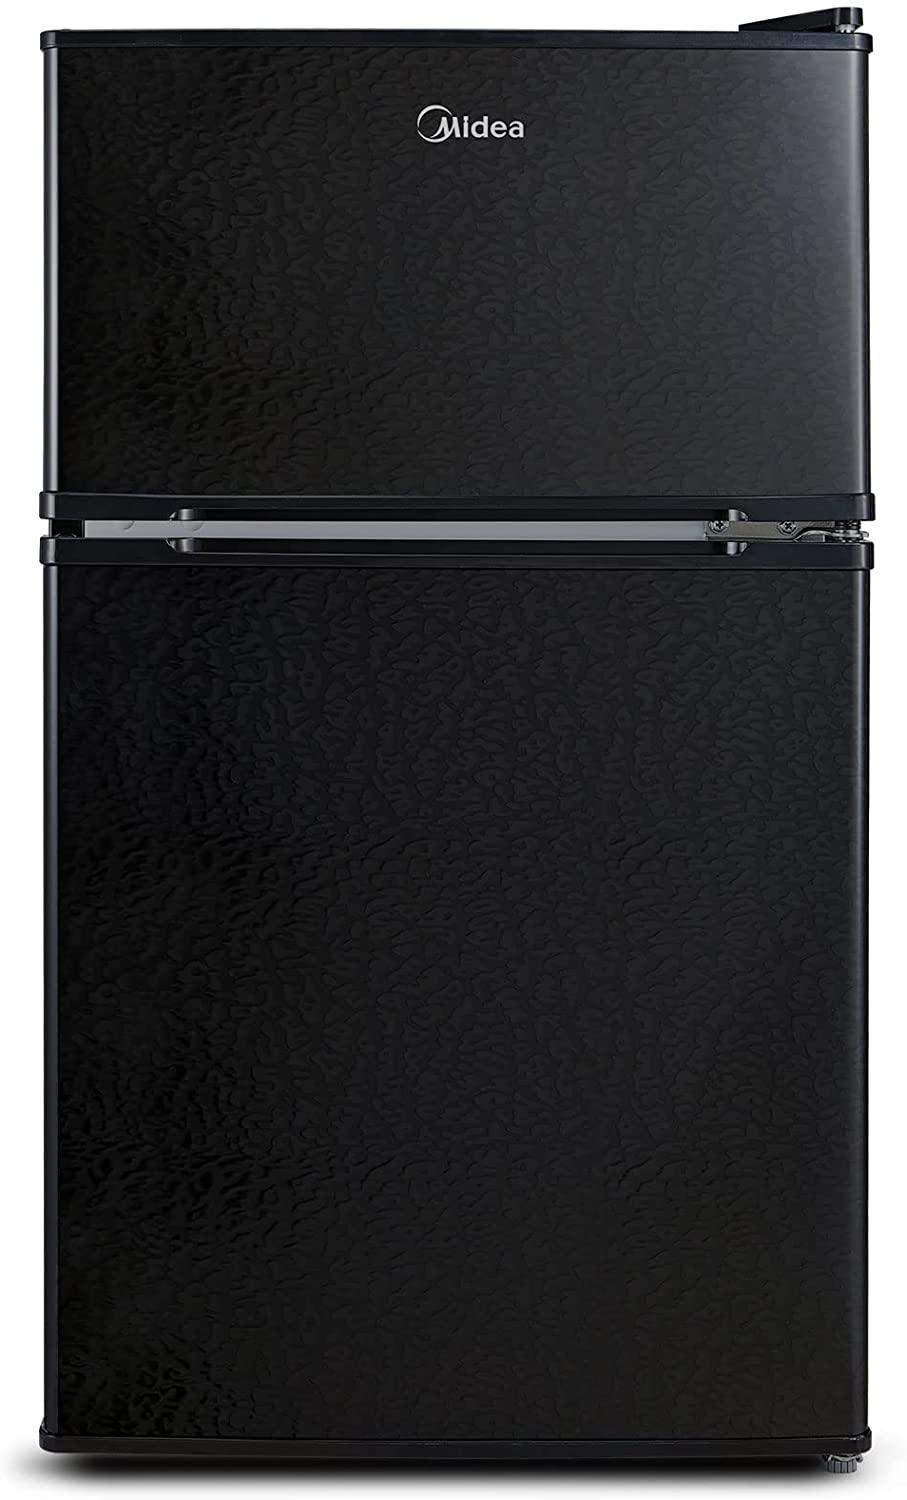 https://www.dontwasteyourmoney.com/wp-content/uploads/2023/03/midea-reversible-door-mini-fridge-with-freezer.jpg